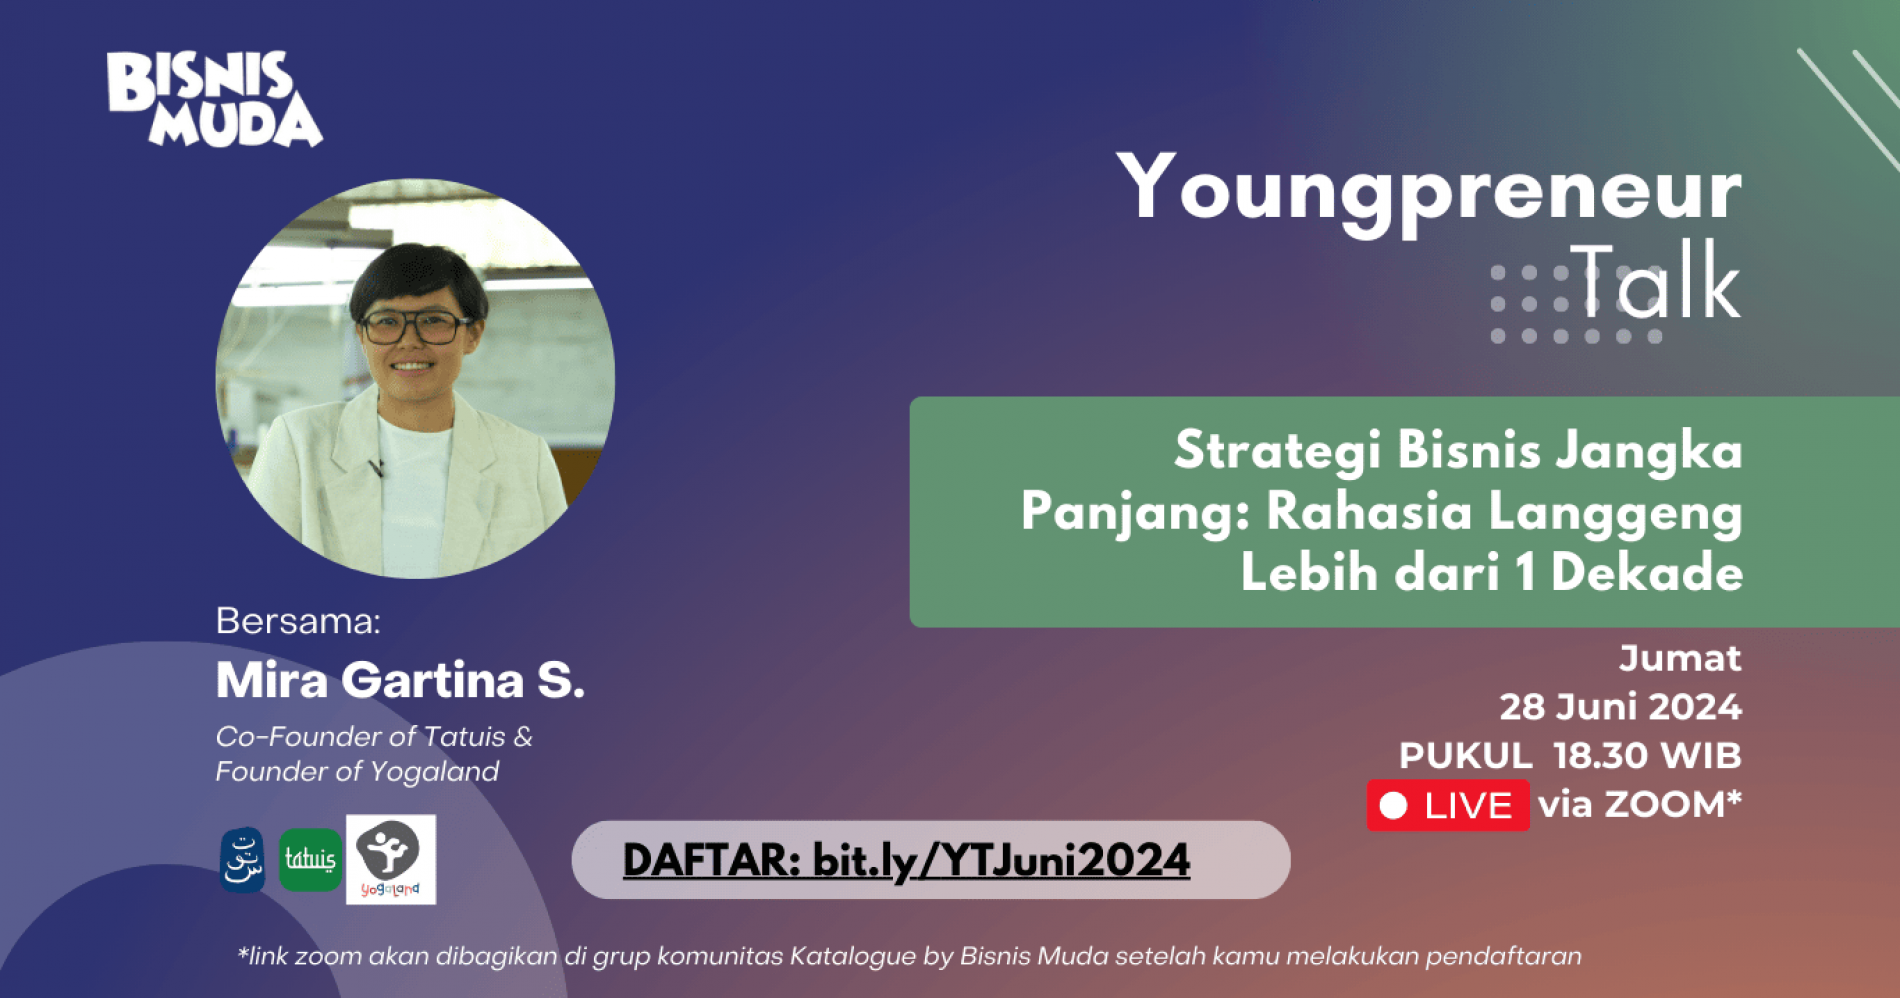 Youngpreneur Talk: Strategi Bisnis Jangka Panjang: Rahasia Langgeng Lebih dari 1 Dekade